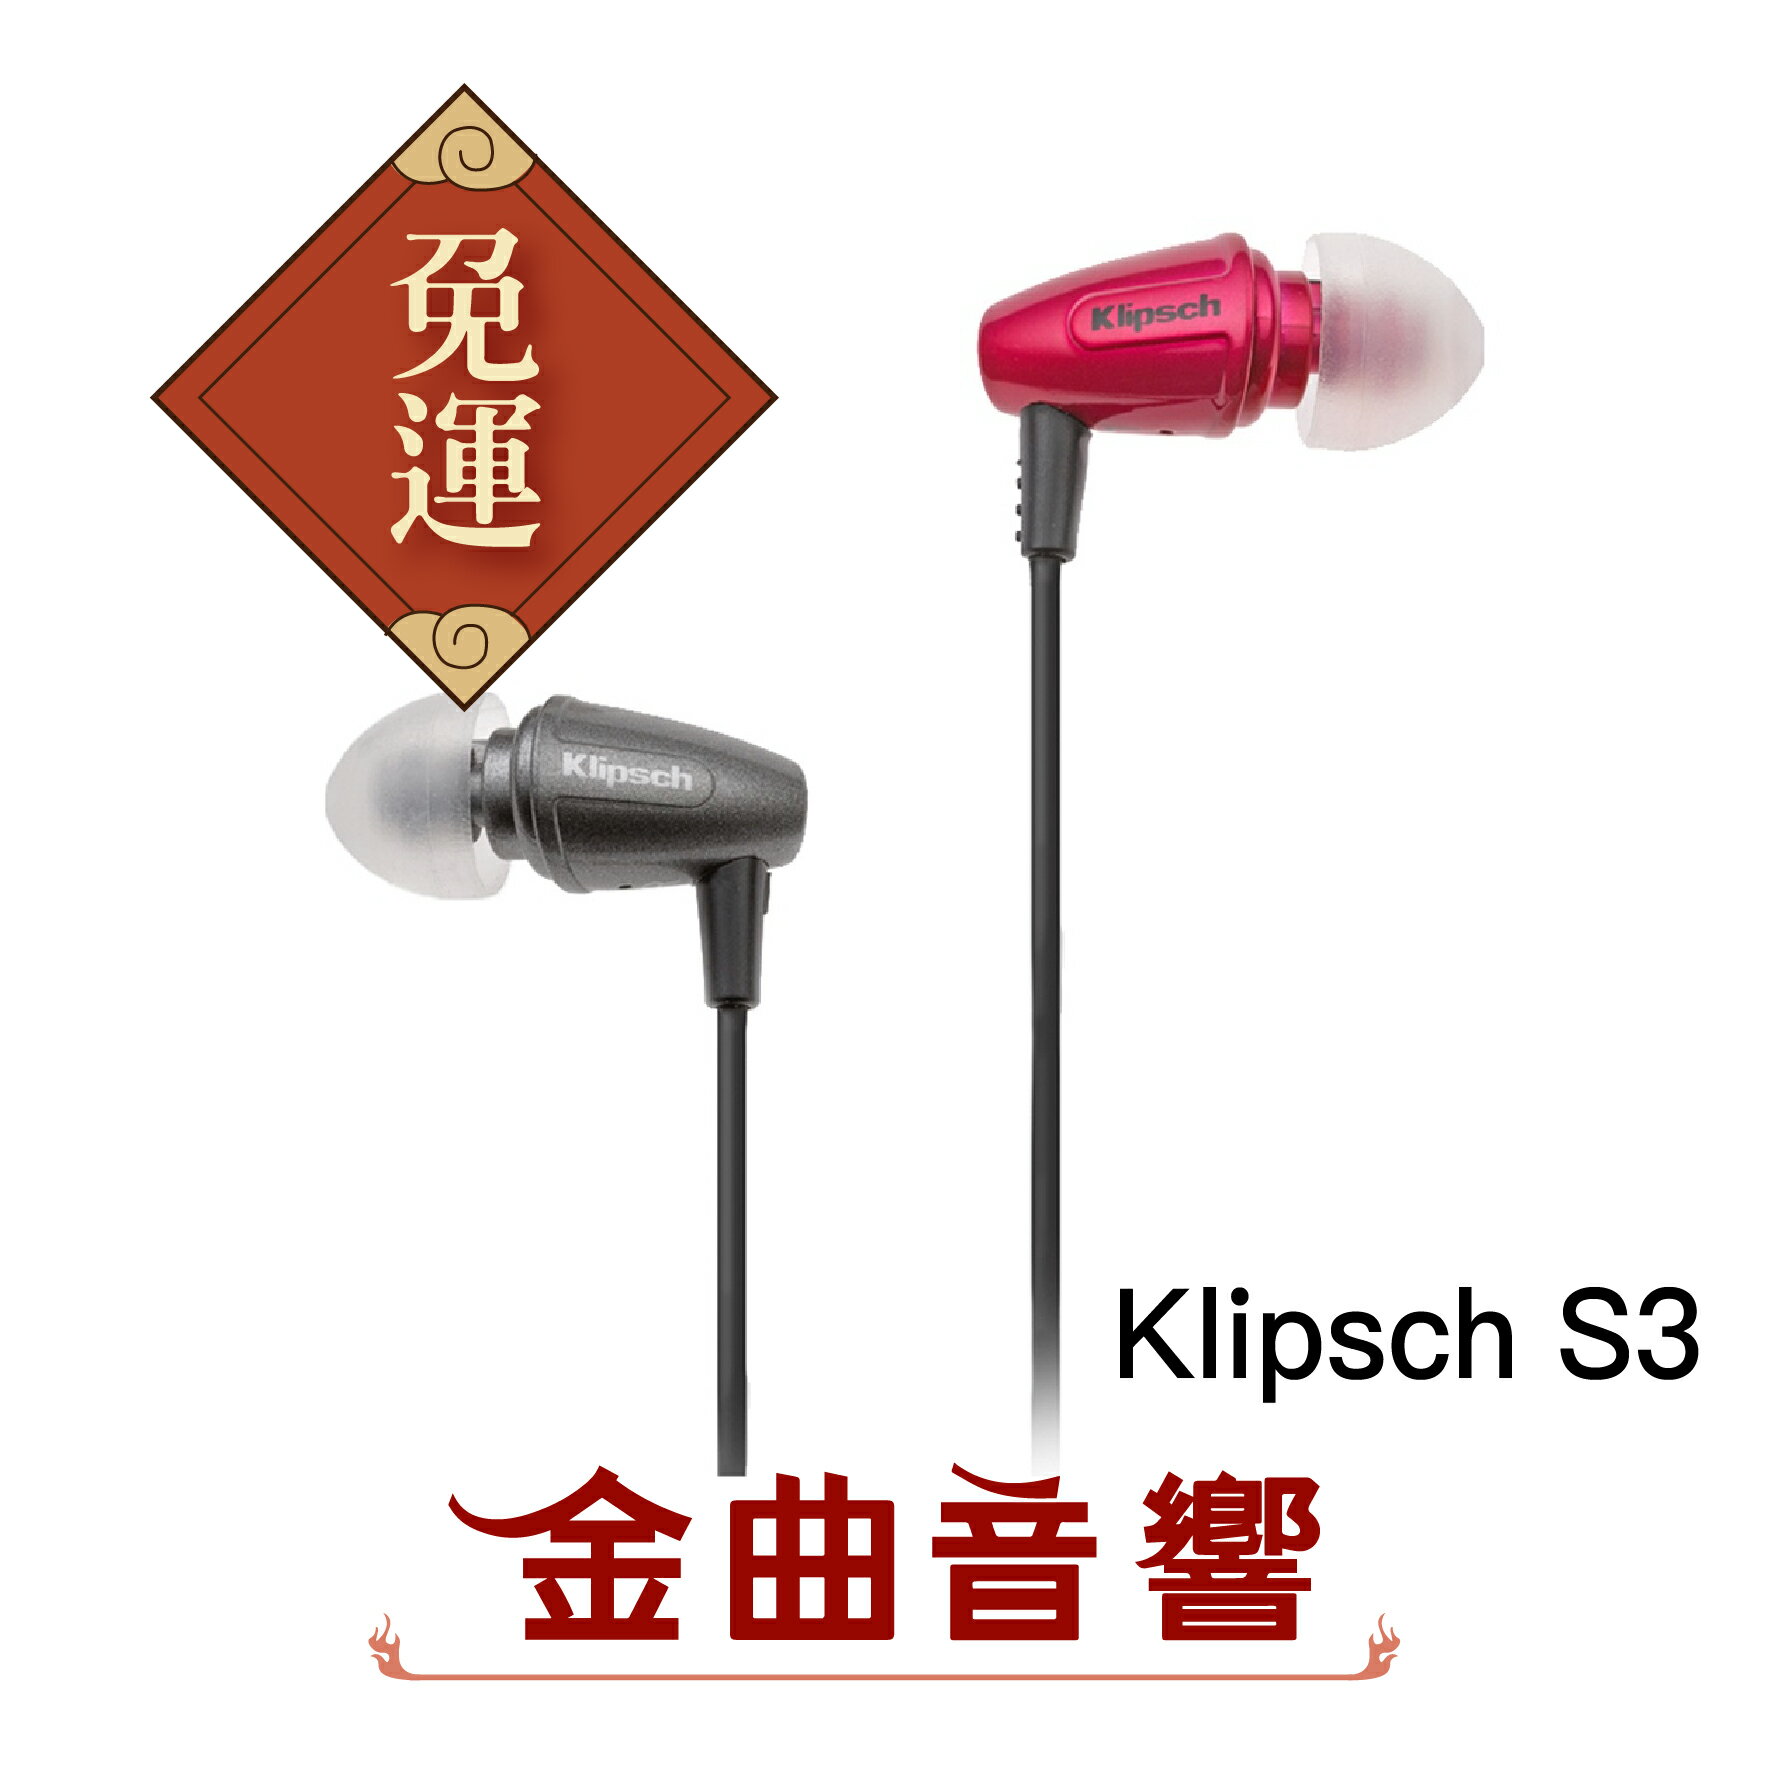 Klipsch 古力奇 S3 耳道式耳機 | 金曲音響